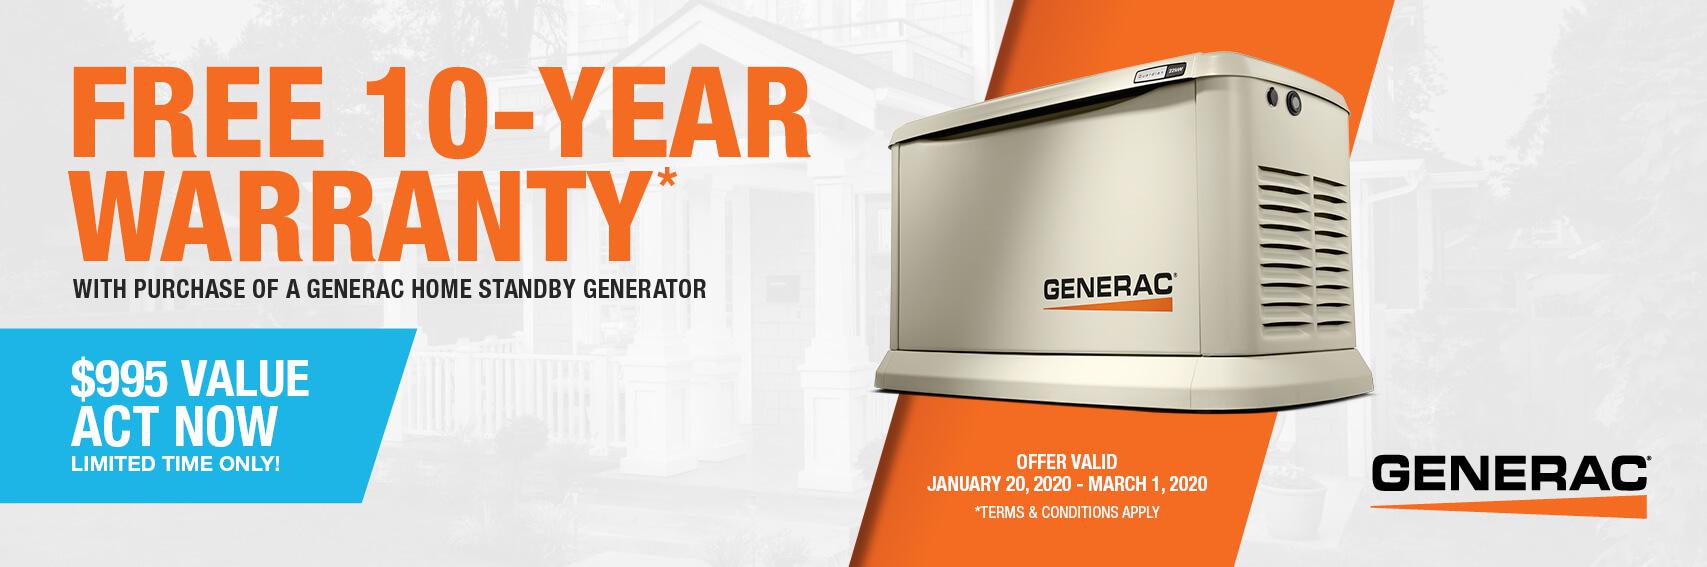 Homestandby Generator Deal | Warranty Offer | Generac Dealer | LOUISVILLE, KY